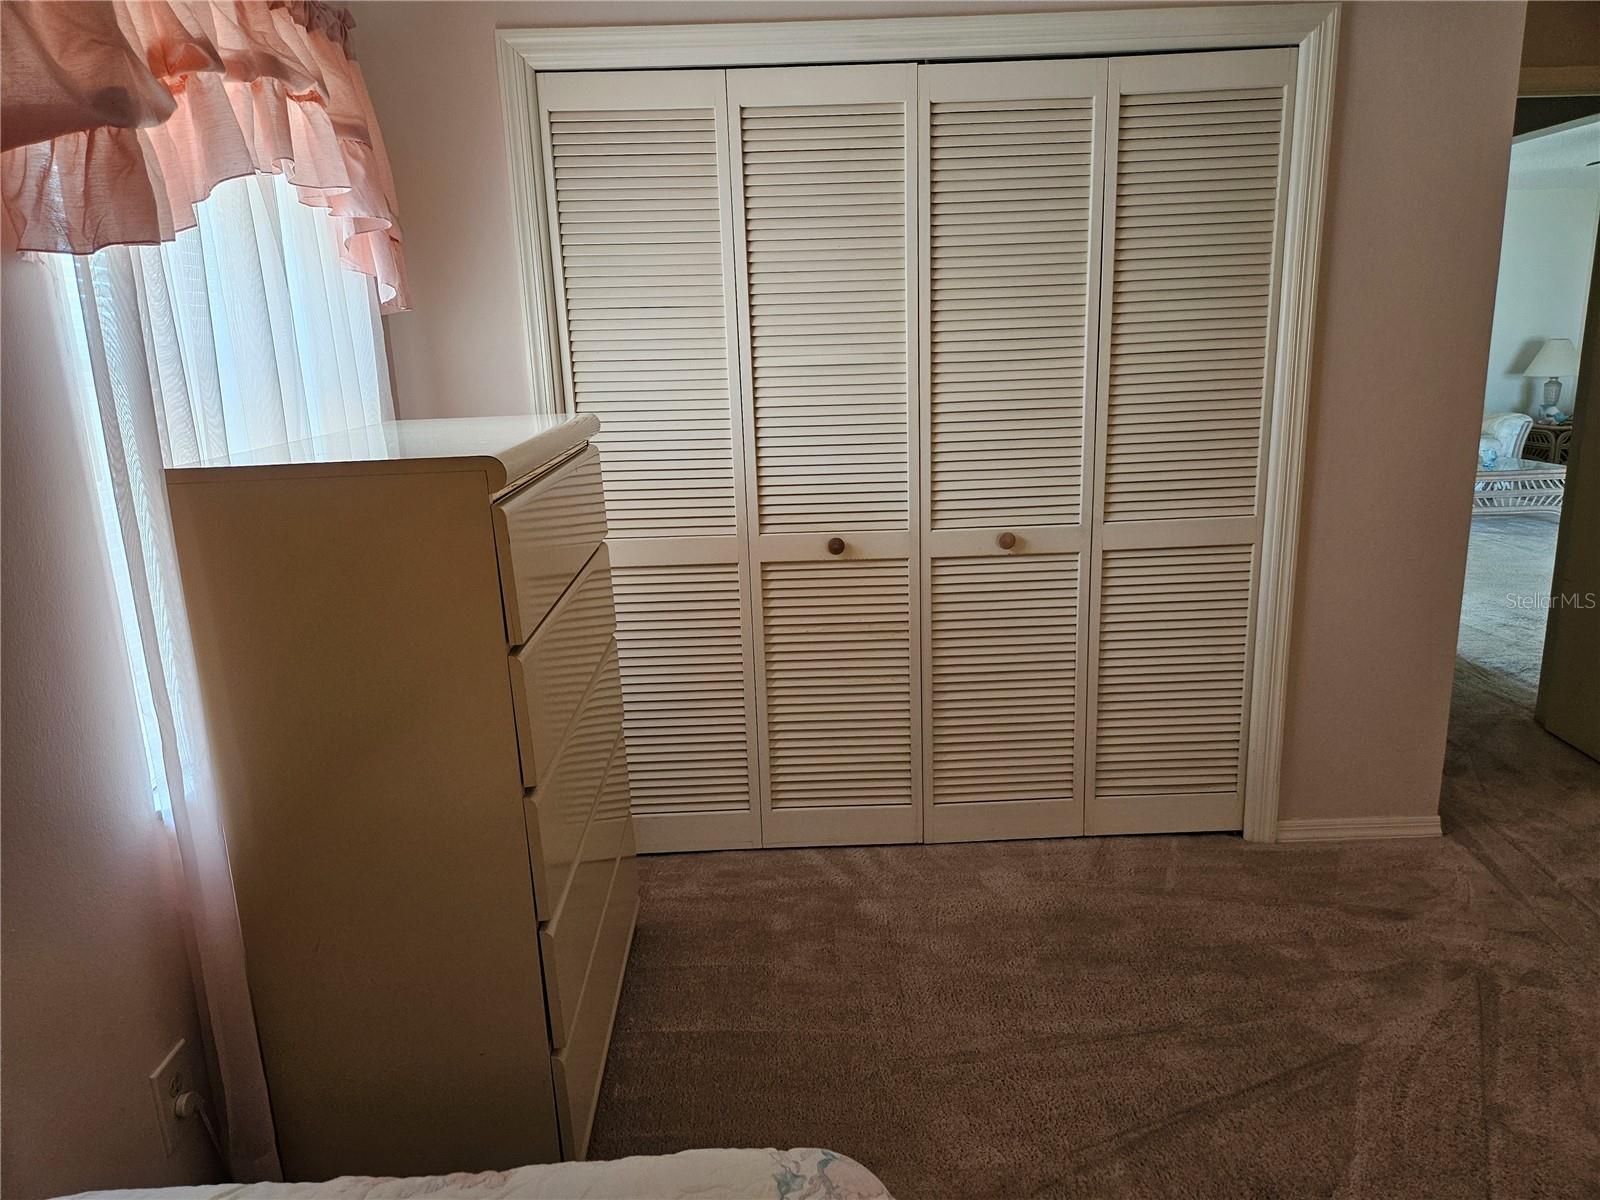 Guest bedroom Closet